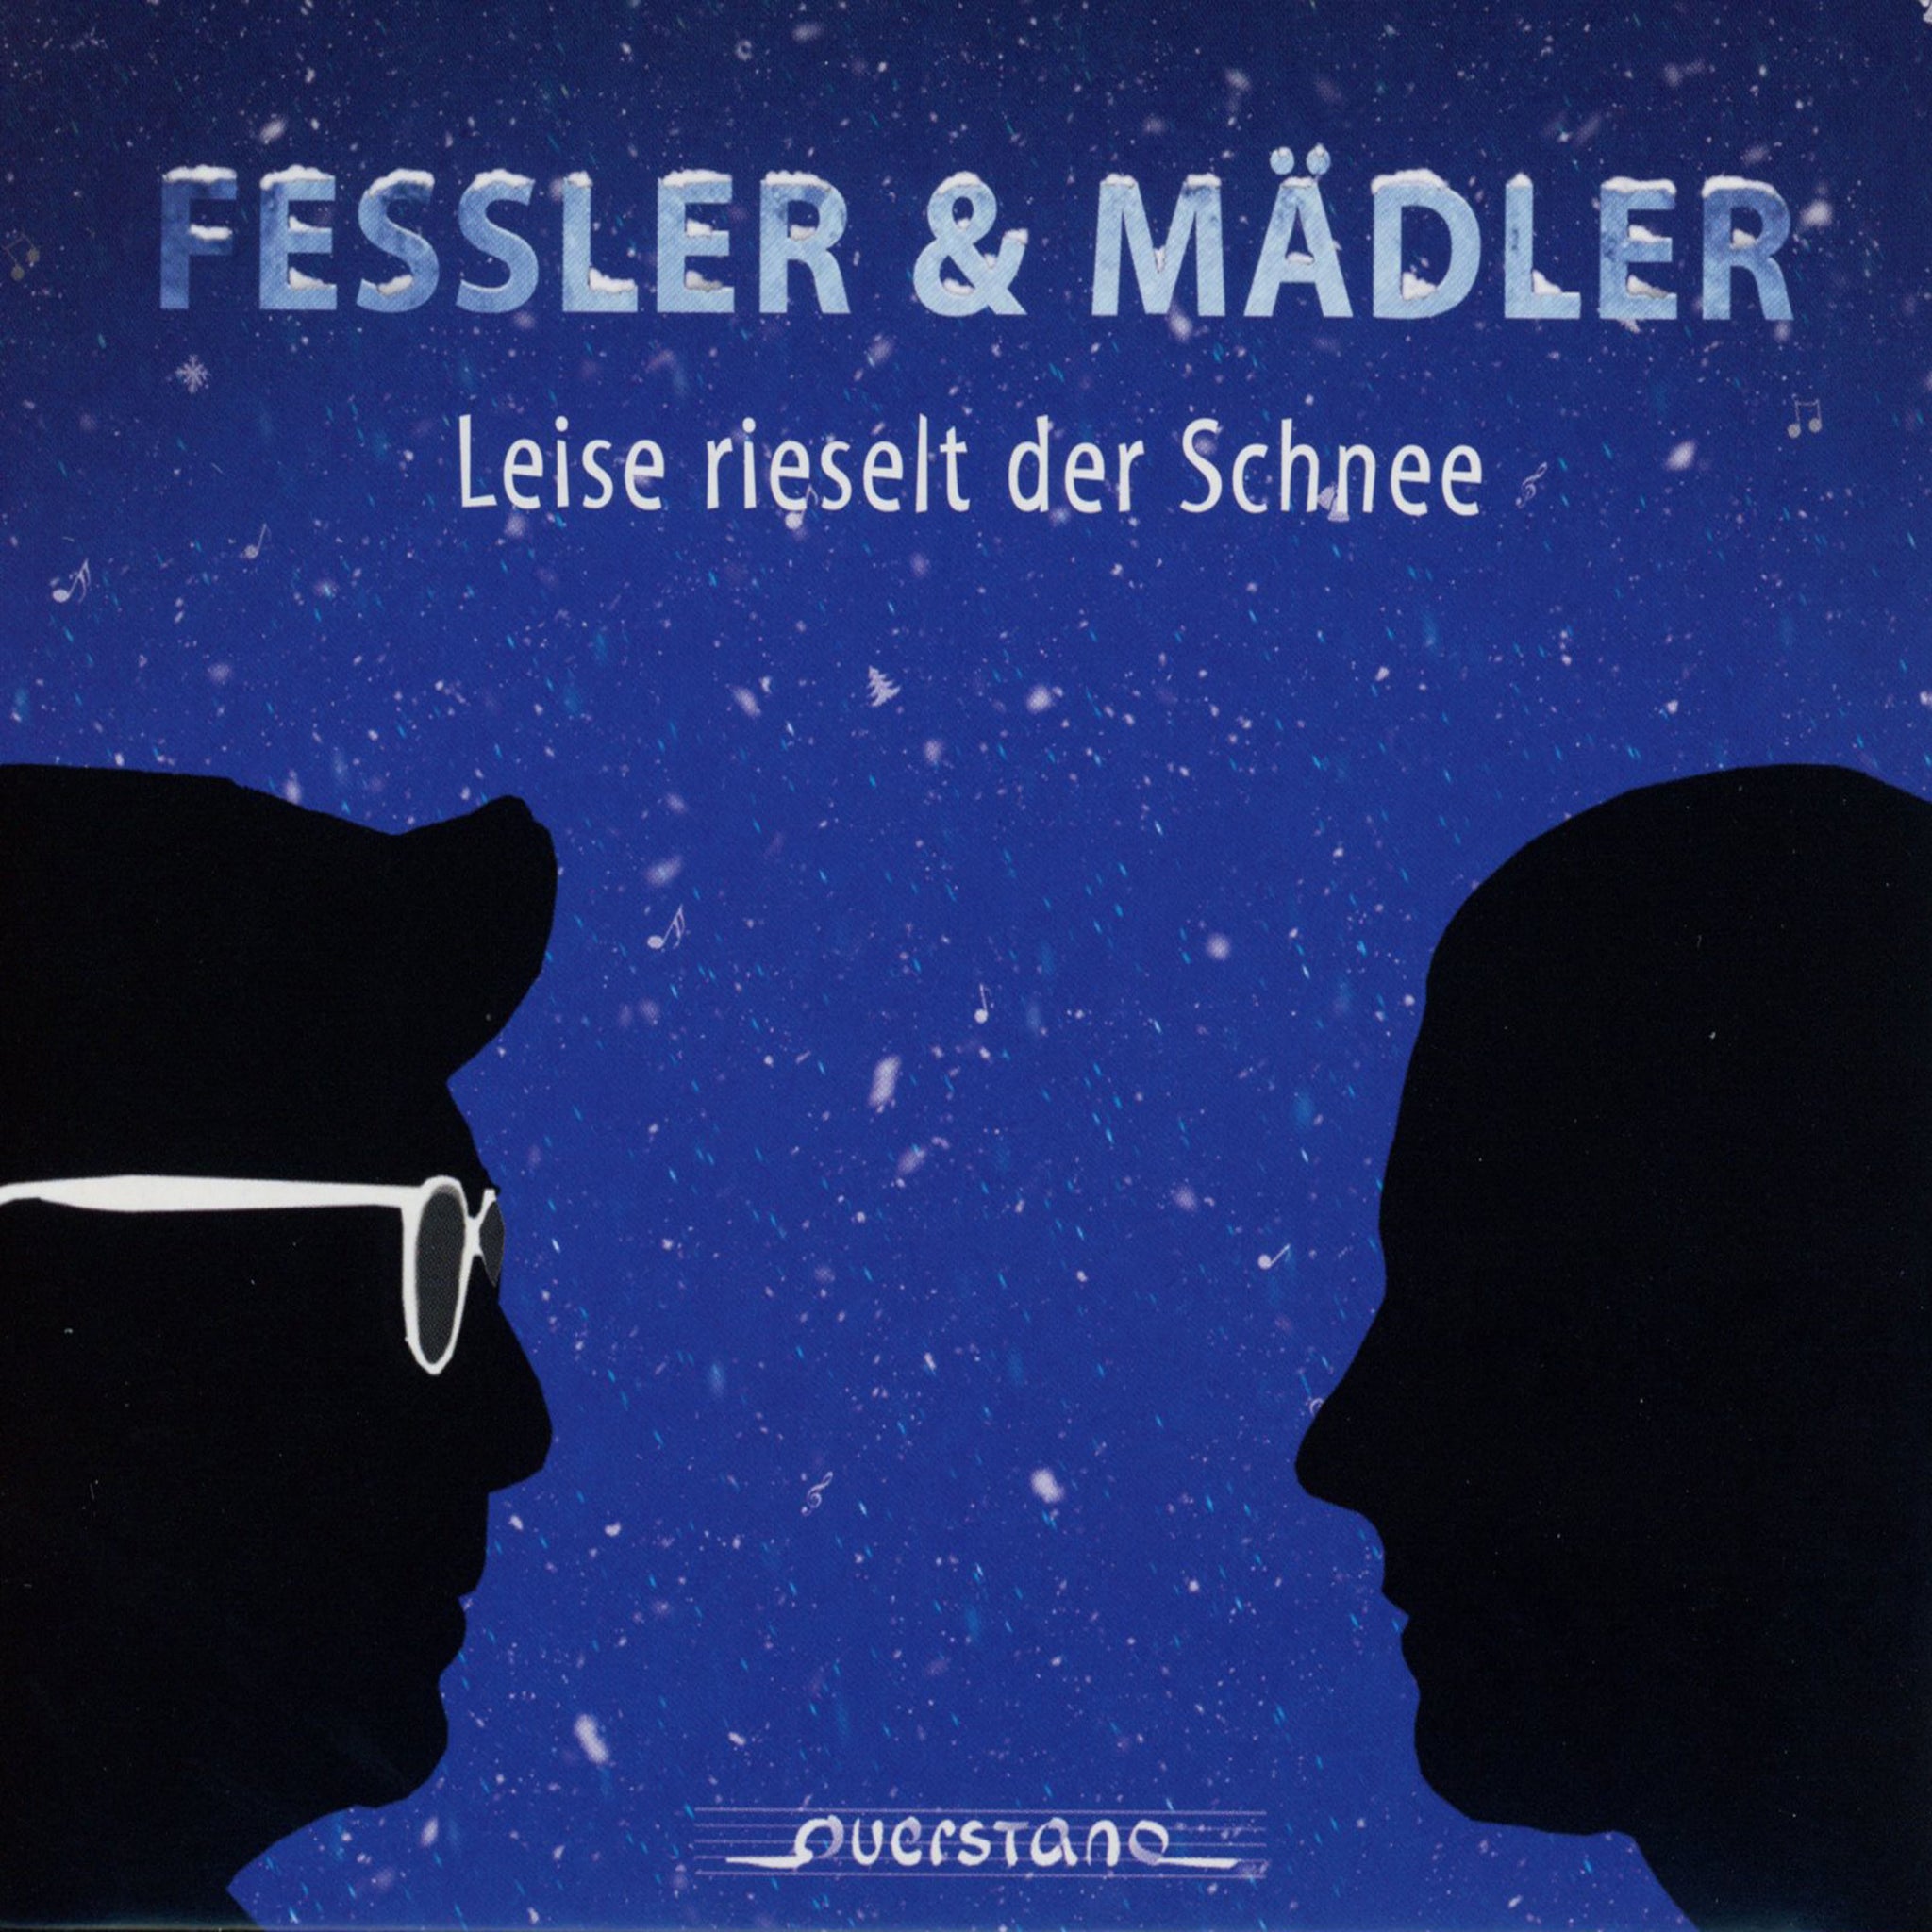 Leise rieselt der Schnee - Christmas Songs / Fessler & Mädler